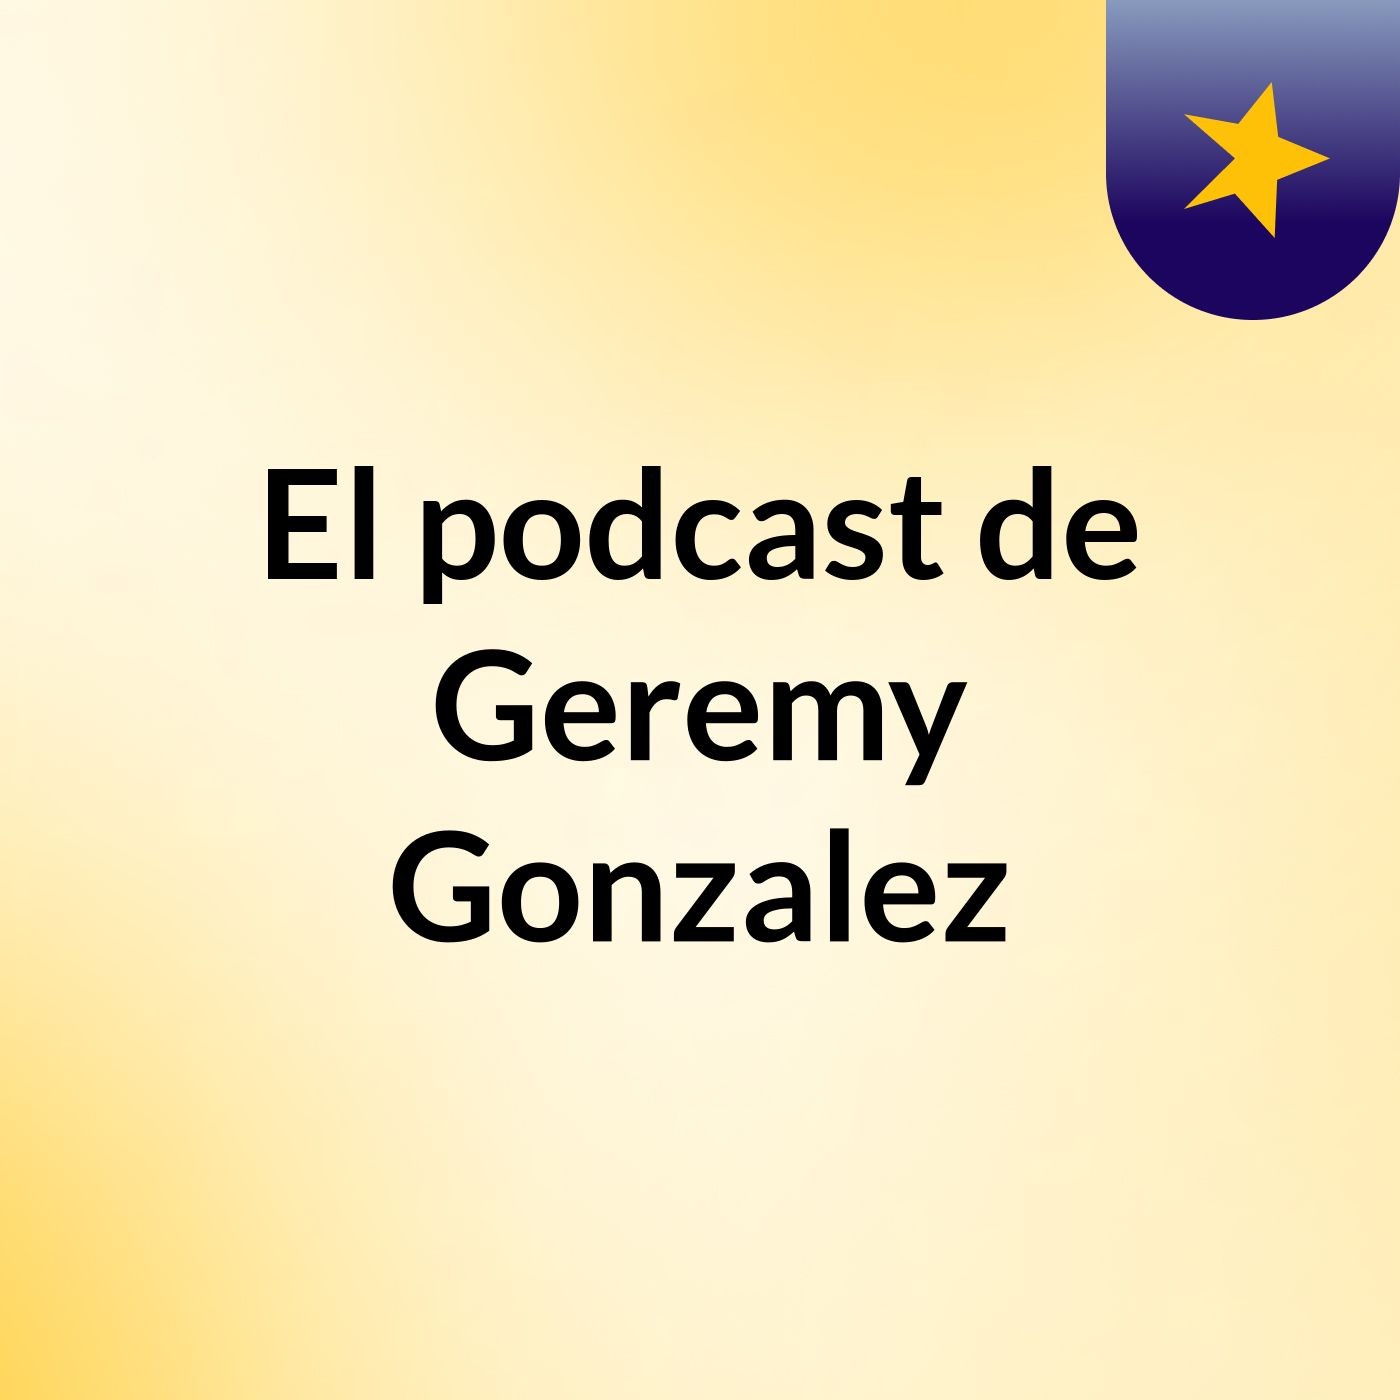 El podcast de Geremy Gonzalez